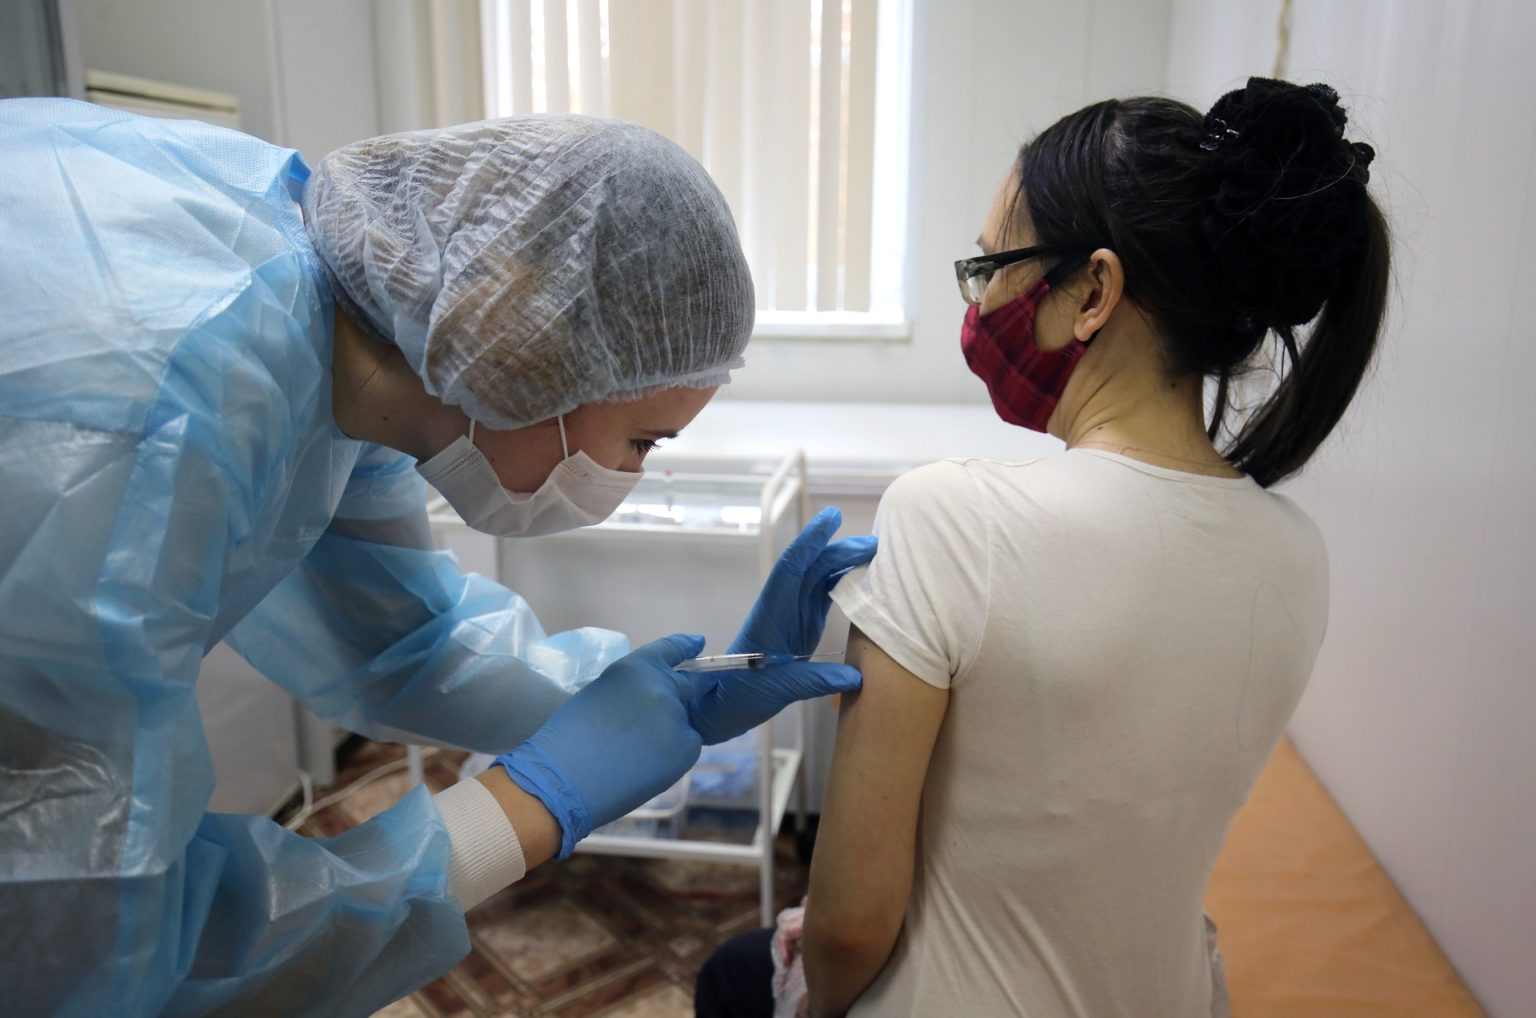 Відколи в Україні дозволили імунізувати проти COVID-19 населення від 12 років, закарпатські медики виконали дітям 4 095 щеплень.

